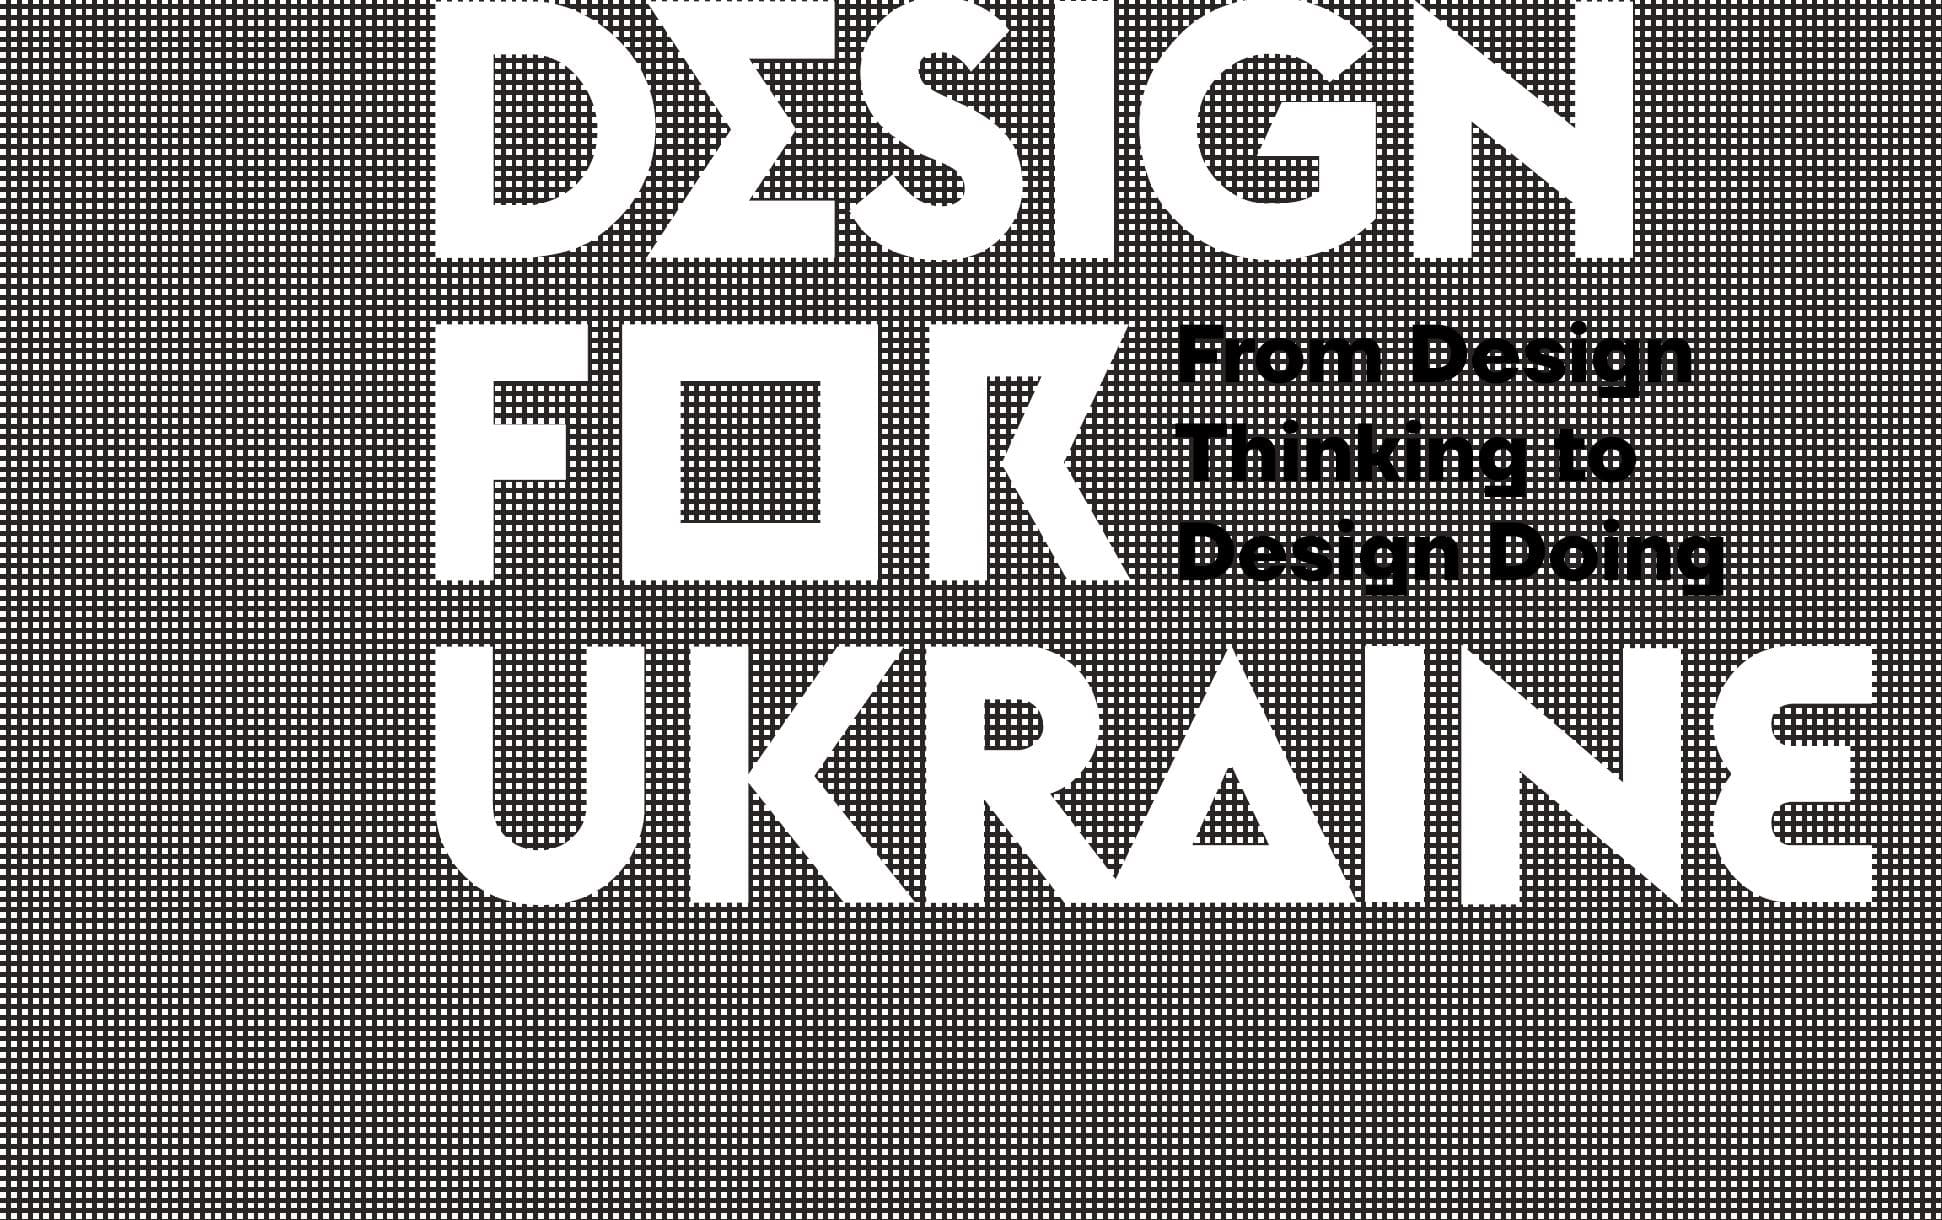 Design for Ukraine